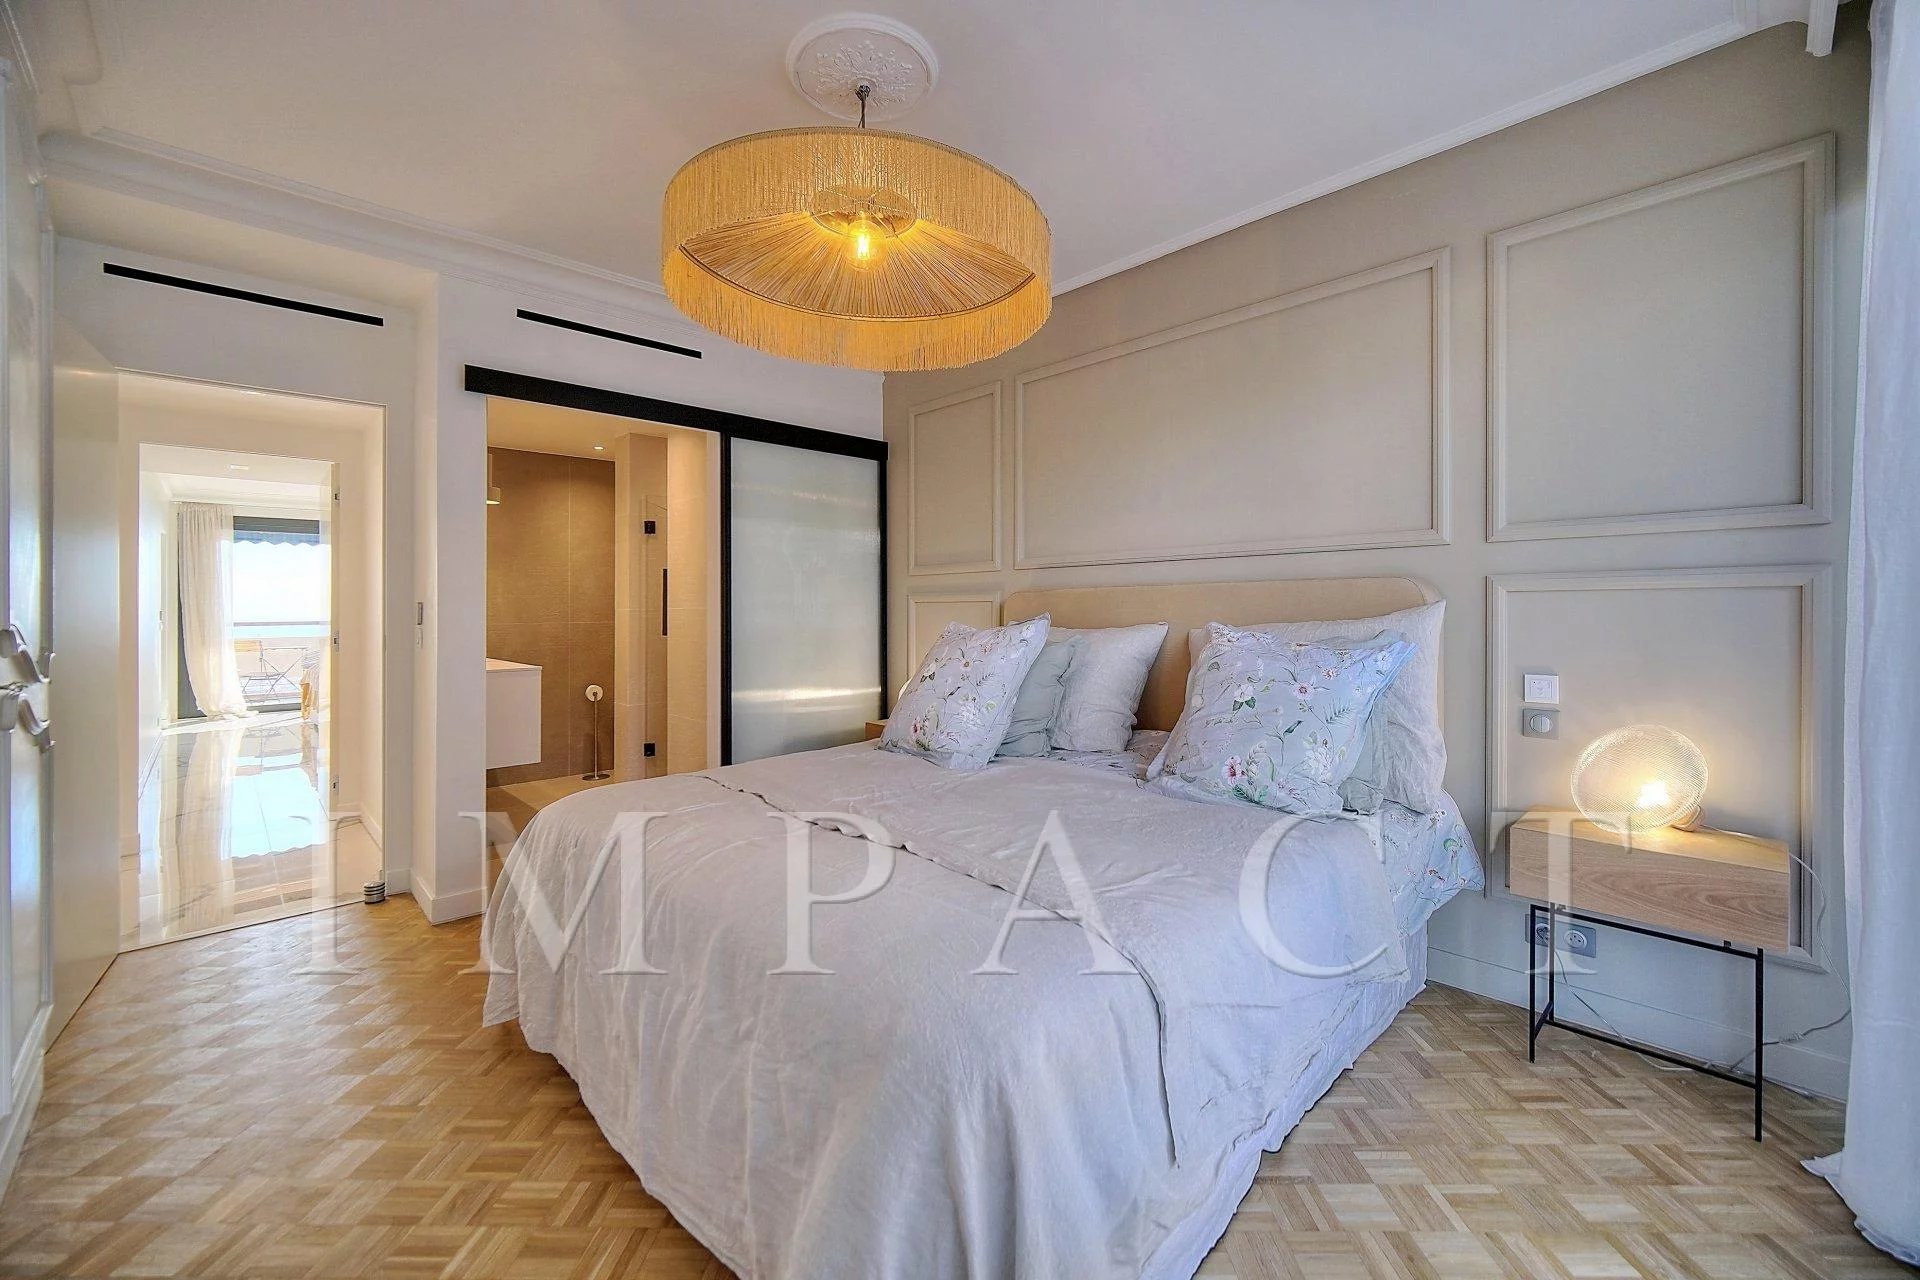 Appartement 2 chambres à louer centre de Cannes